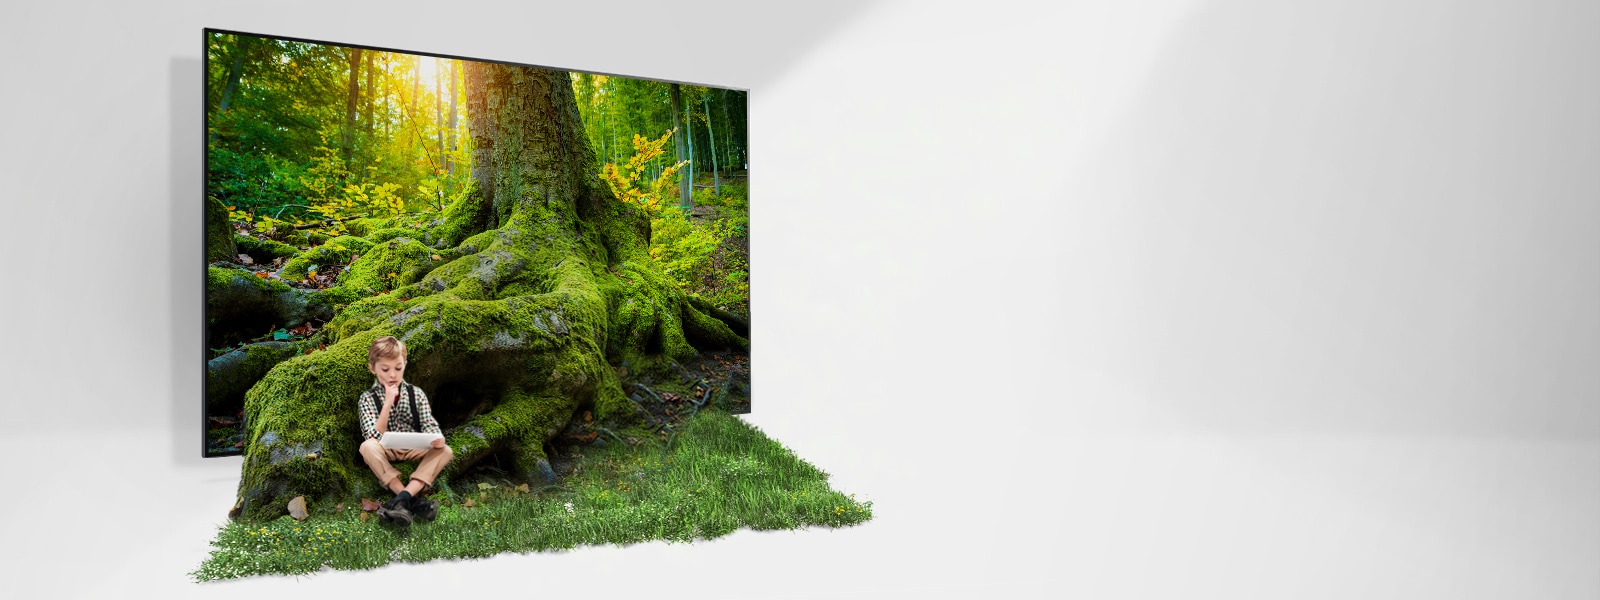 La racine d’un arbre géant sort d’un écran de téléviseur et couvre le sol d’herbe. Un enfant est assis dans l’herbe.